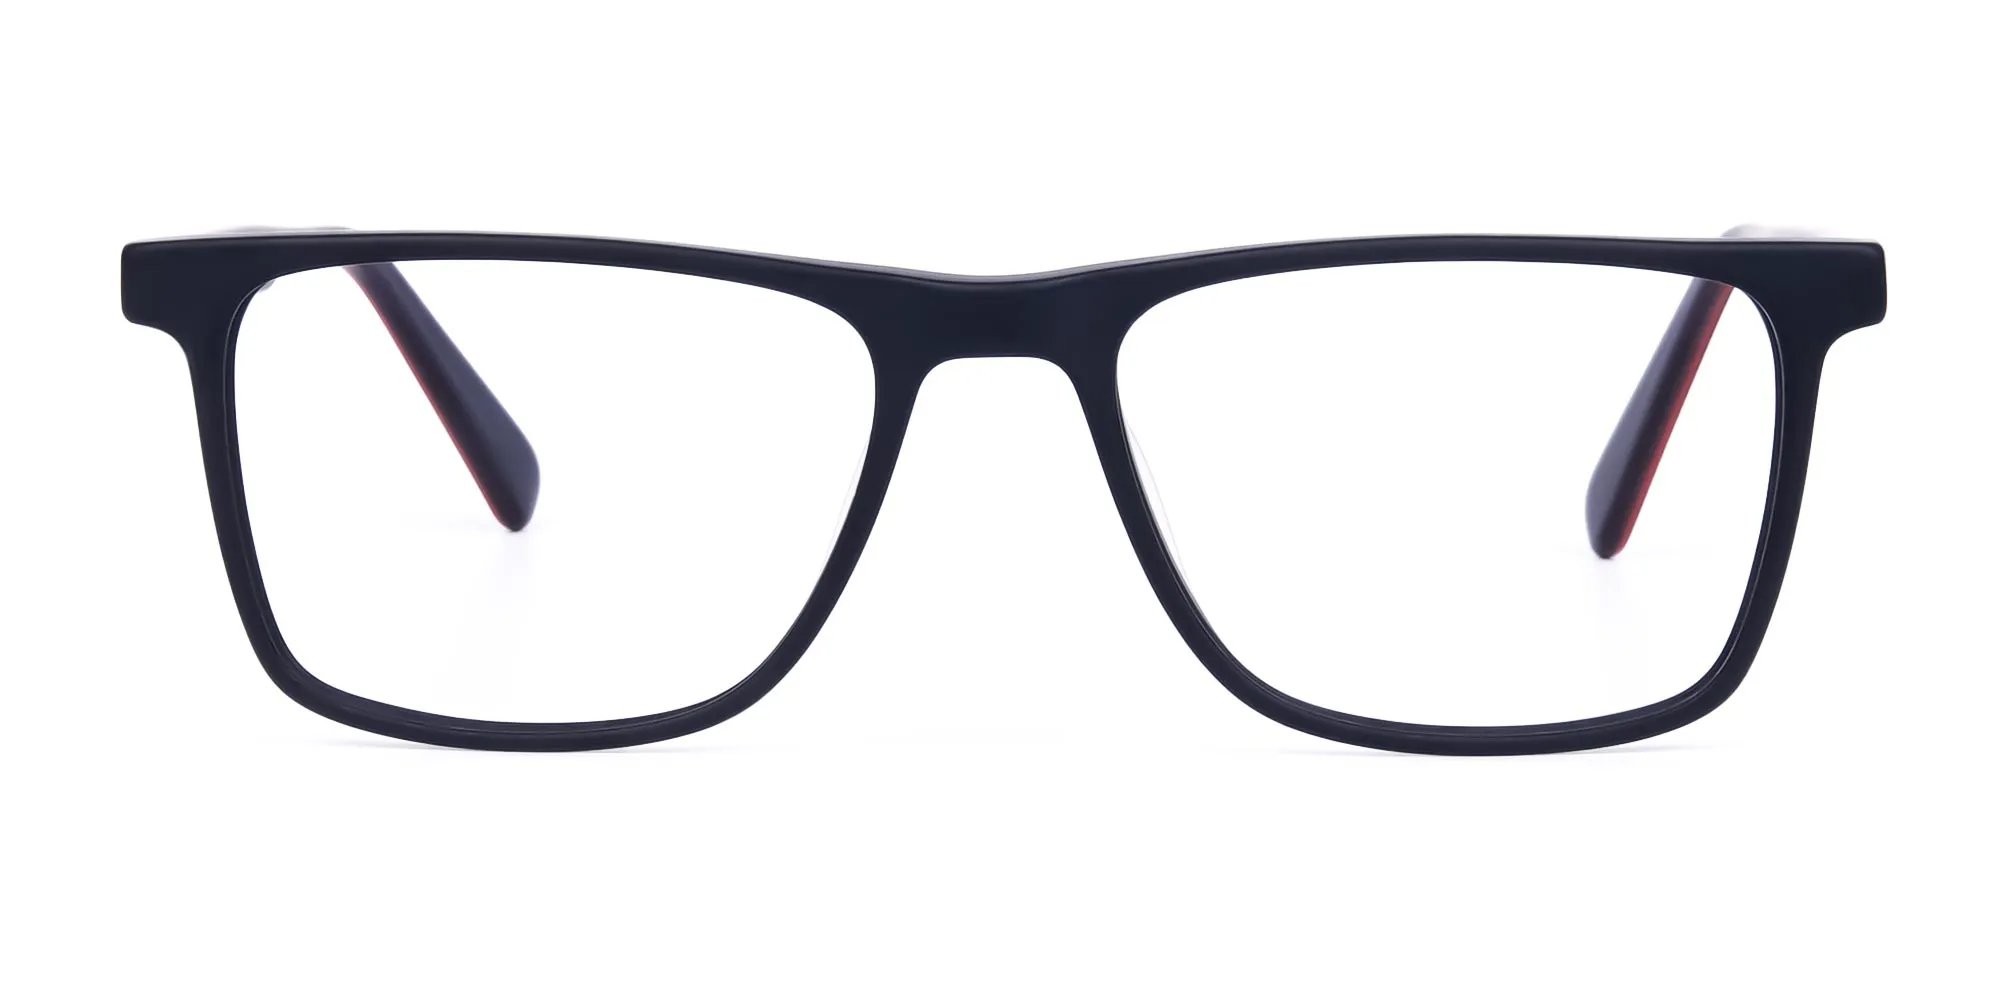 matte-black-rimmed-rectangular-glasses-2